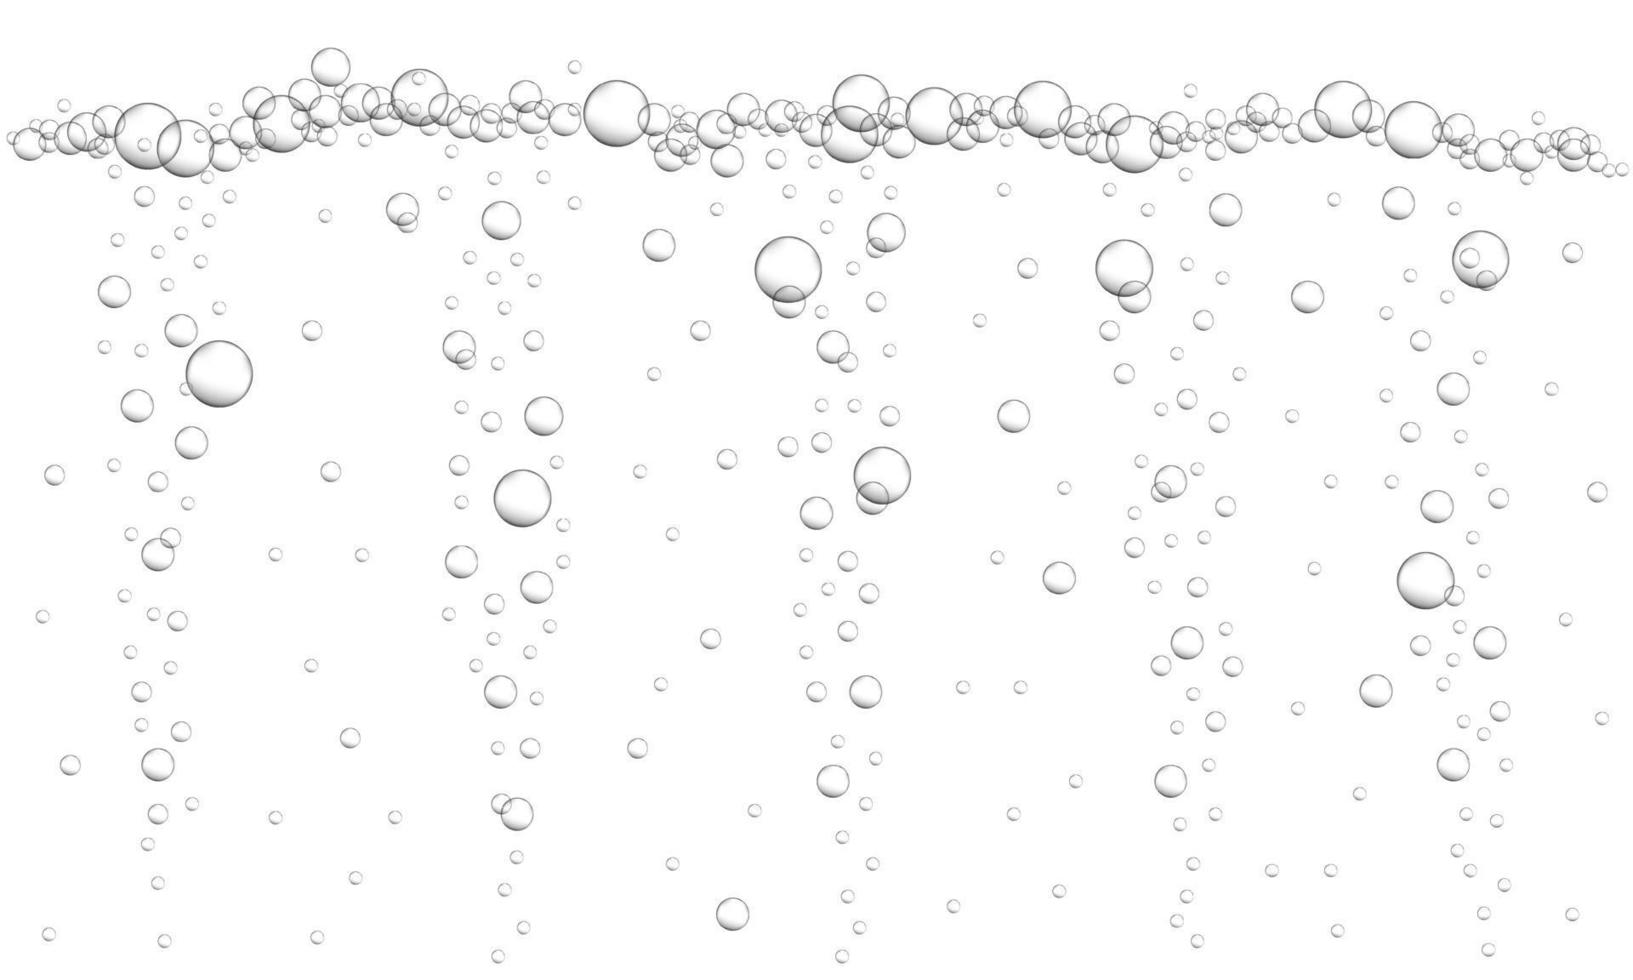 sfondo di bolle d'aria sott'acqua. bevanda gassata, acqua gassata, soda, limonata, champagne, birra, spumante. flusso d'acqua in oceano, mare o acquario vettore